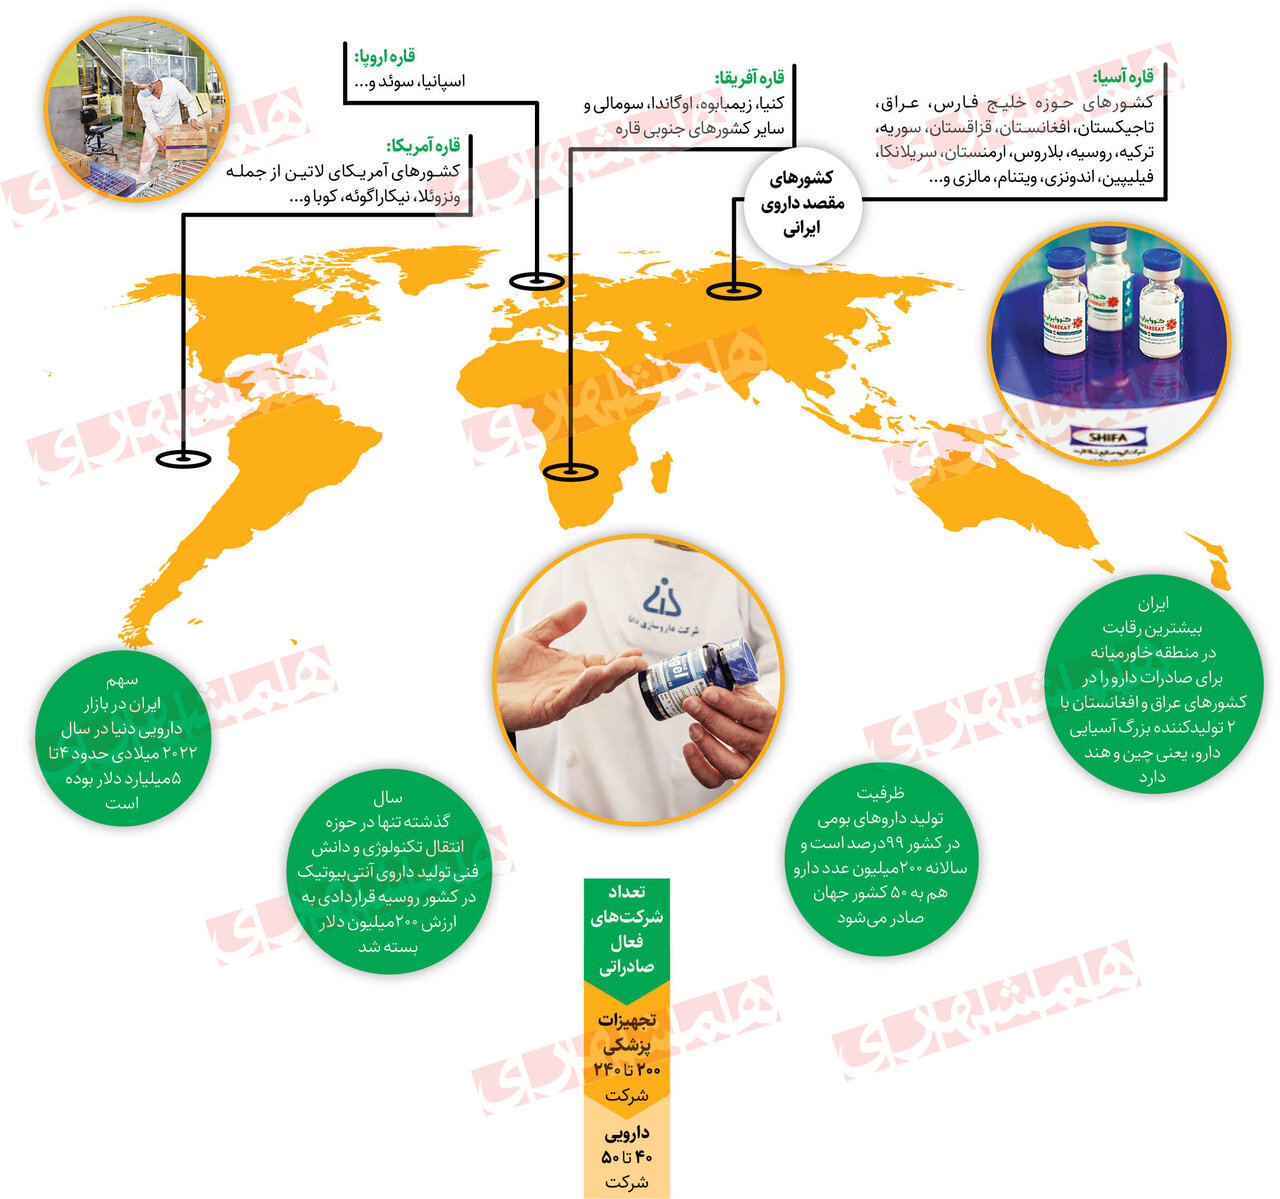 سفر داروهای ایرانی به تمام جهان | کدام داروها ارزآوری بیشتری دارند؟ | رقبای داروسازان ایران در آسیا